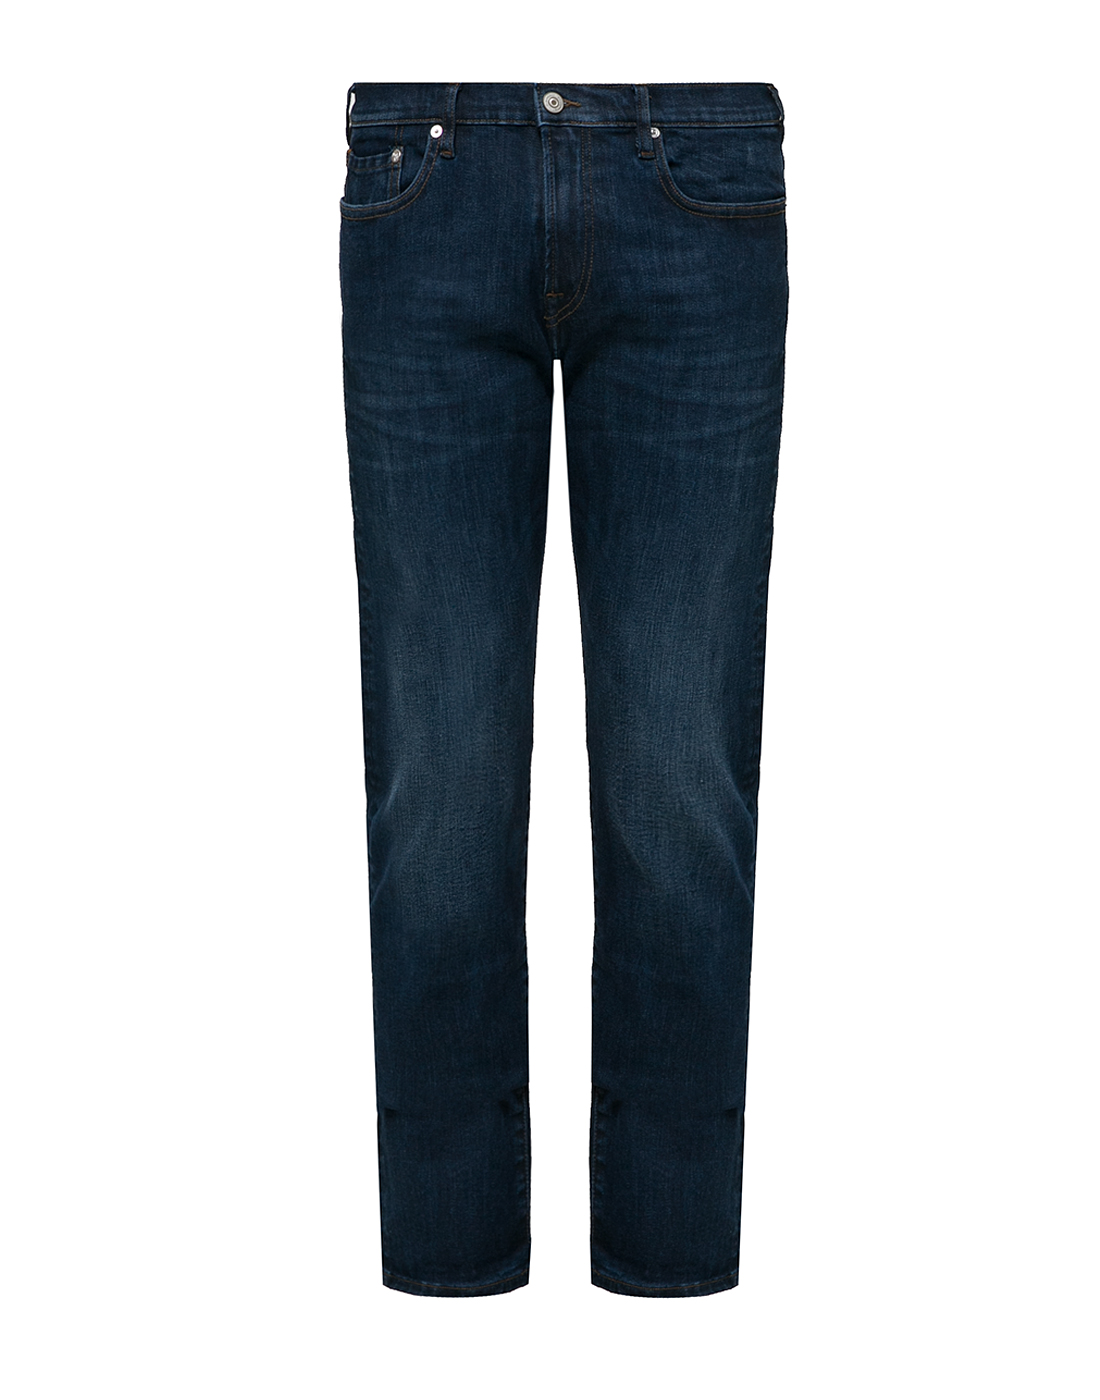 Чоловічі джинси темно-сині Tapered Fit-1